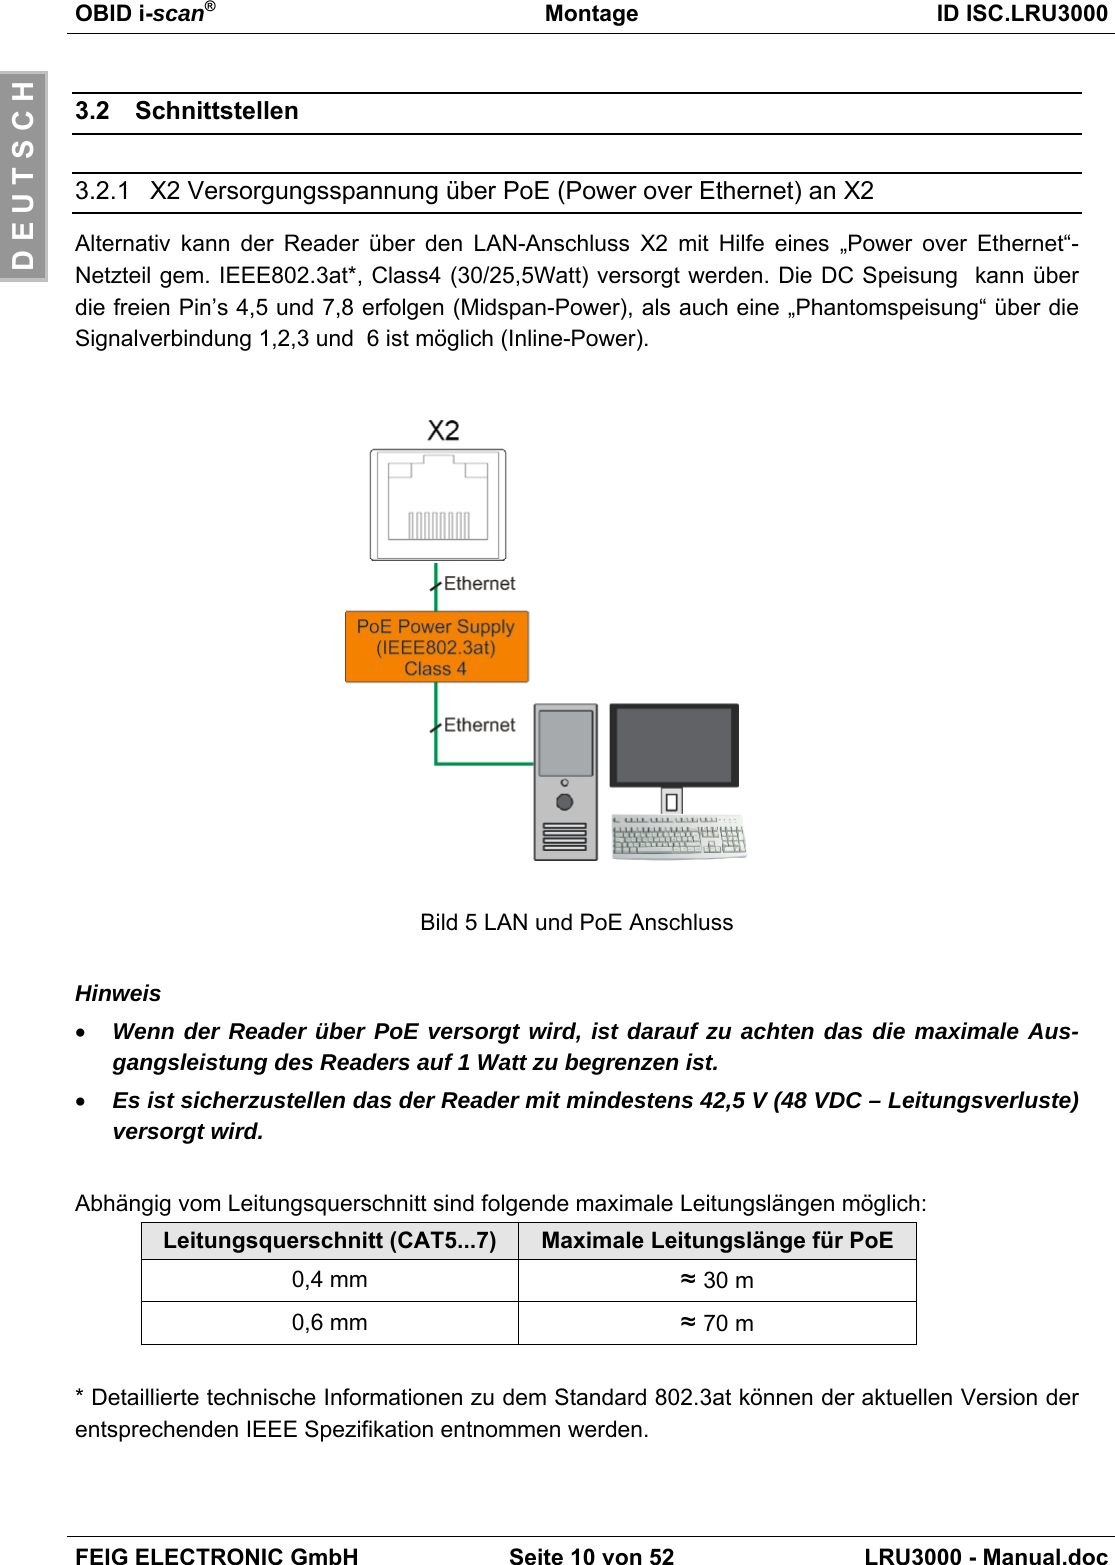 OBID i-scan®Montage ID ISC.LRU3000FEIG ELECTRONIC GmbH Seite 10 von 52 LRU3000 - Manual.docD E U T S C H3.2 Schnittstellen3.2.1  X2 Versorgungsspannung über PoE (Power over Ethernet) an X2Alternativ kann der Reader über den LAN-Anschluss X2 mit Hilfe eines „Power over Ethernet“-Netzteil gem. IEEE802.3at*, Class4 (30/25,5Watt) versorgt werden. Die DC Speisung  kann überdie freien Pin’s 4,5 und 7,8 erfolgen (Midspan-Power), als auch eine „Phantomspeisung“ über dieSignalverbindung 1,2,3 und  6 ist möglich (Inline-Power).Bild 5 LAN und PoE AnschlussHinweis• Wenn der Reader über PoE versorgt wird, ist darauf zu achten das die maximale Aus-gangsleistung des Readers auf 1 Watt zu begrenzen ist.• Es ist sicherzustellen das der Reader mit mindestens 42,5 V (48 VDC – Leitungsverluste)versorgt wird.Abhängig vom Leitungsquerschnitt sind folgende maximale Leitungslängen möglich:Leitungsquerschnitt (CAT5...7) Maximale Leitungslänge für PoE0,4 mm ≈ 30 m0,6 mm ≈ 70 m* Detaillierte technische Informationen zu dem Standard 802.3at können der aktuellen Version derentsprechenden IEEE Spezifikation entnommen werden.